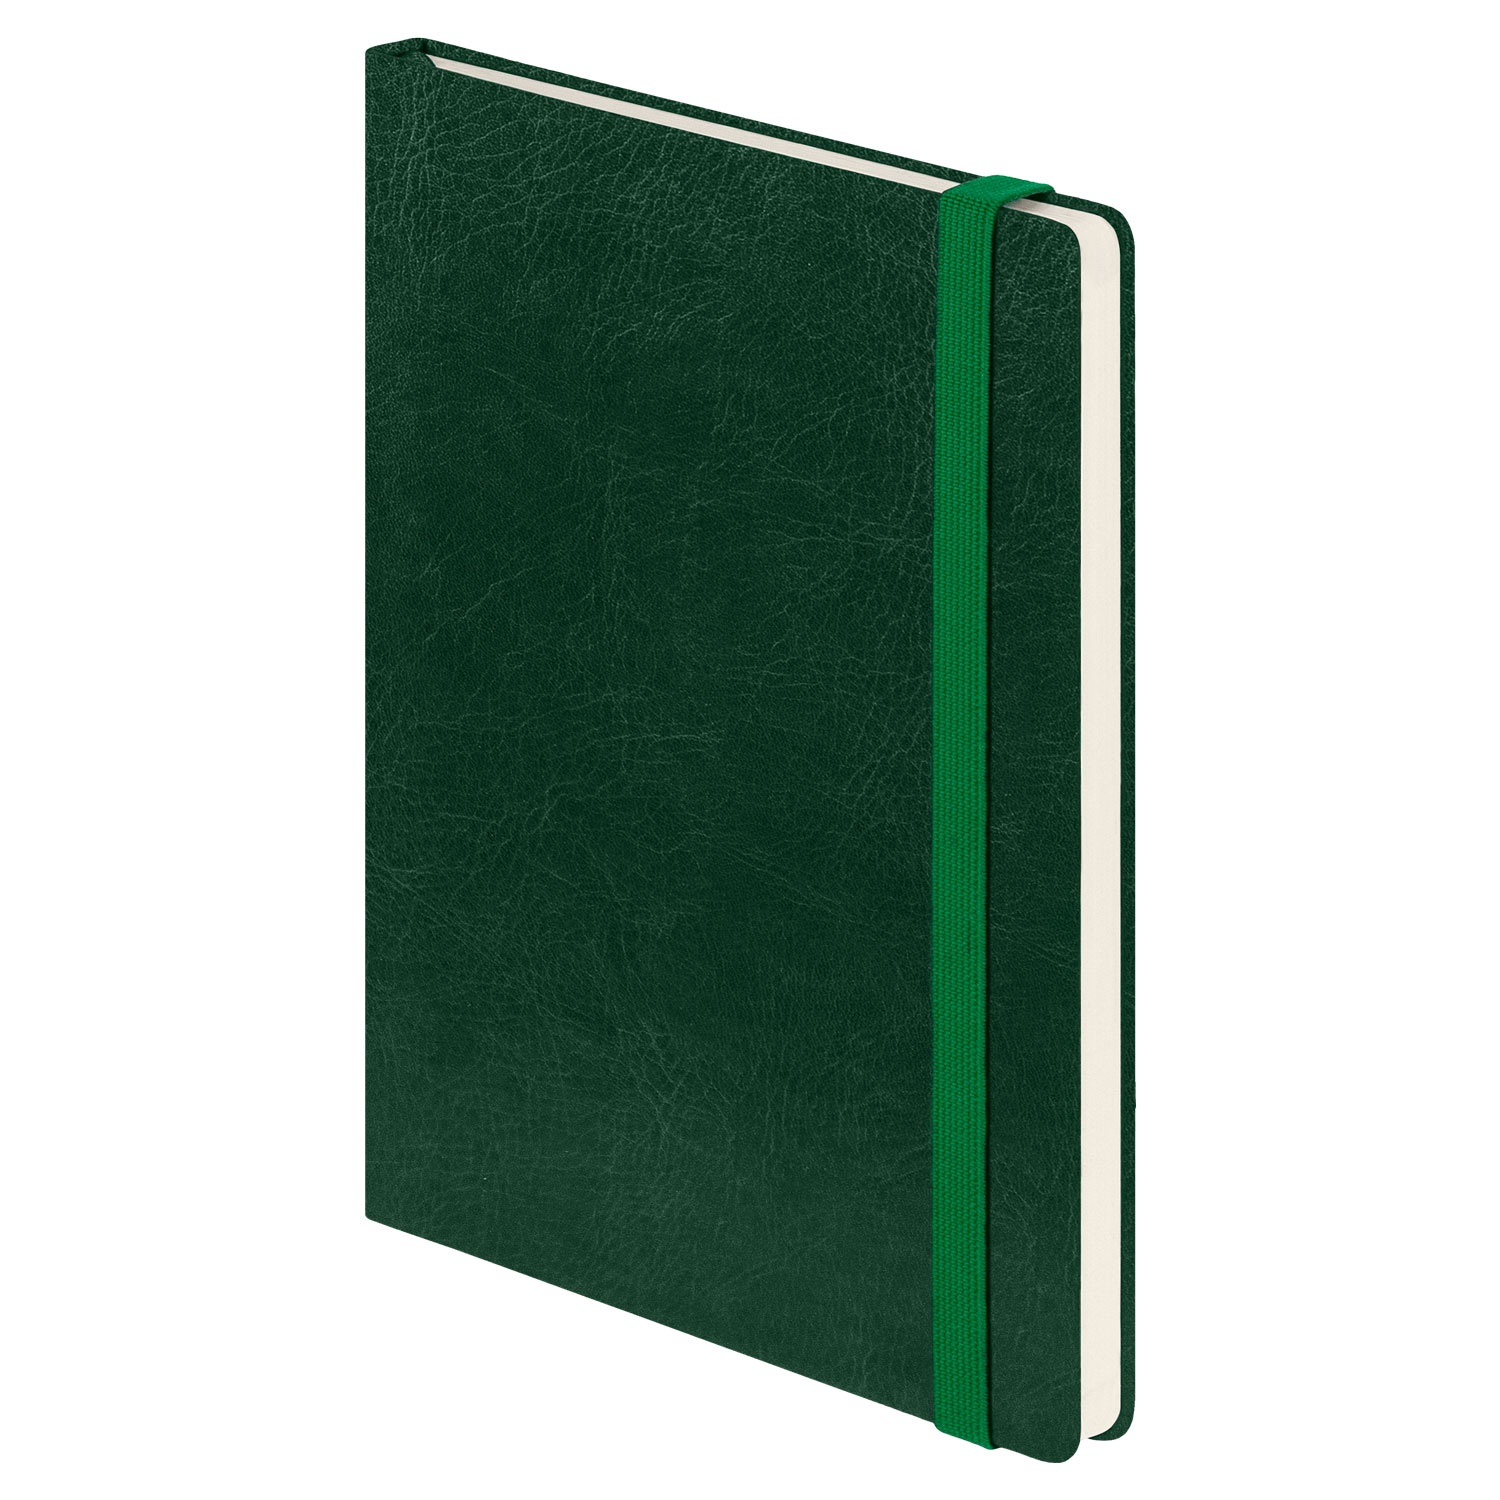 Ежедневник Voyage BtoBook недатированный, зеленый (без упаковки, без стикера)